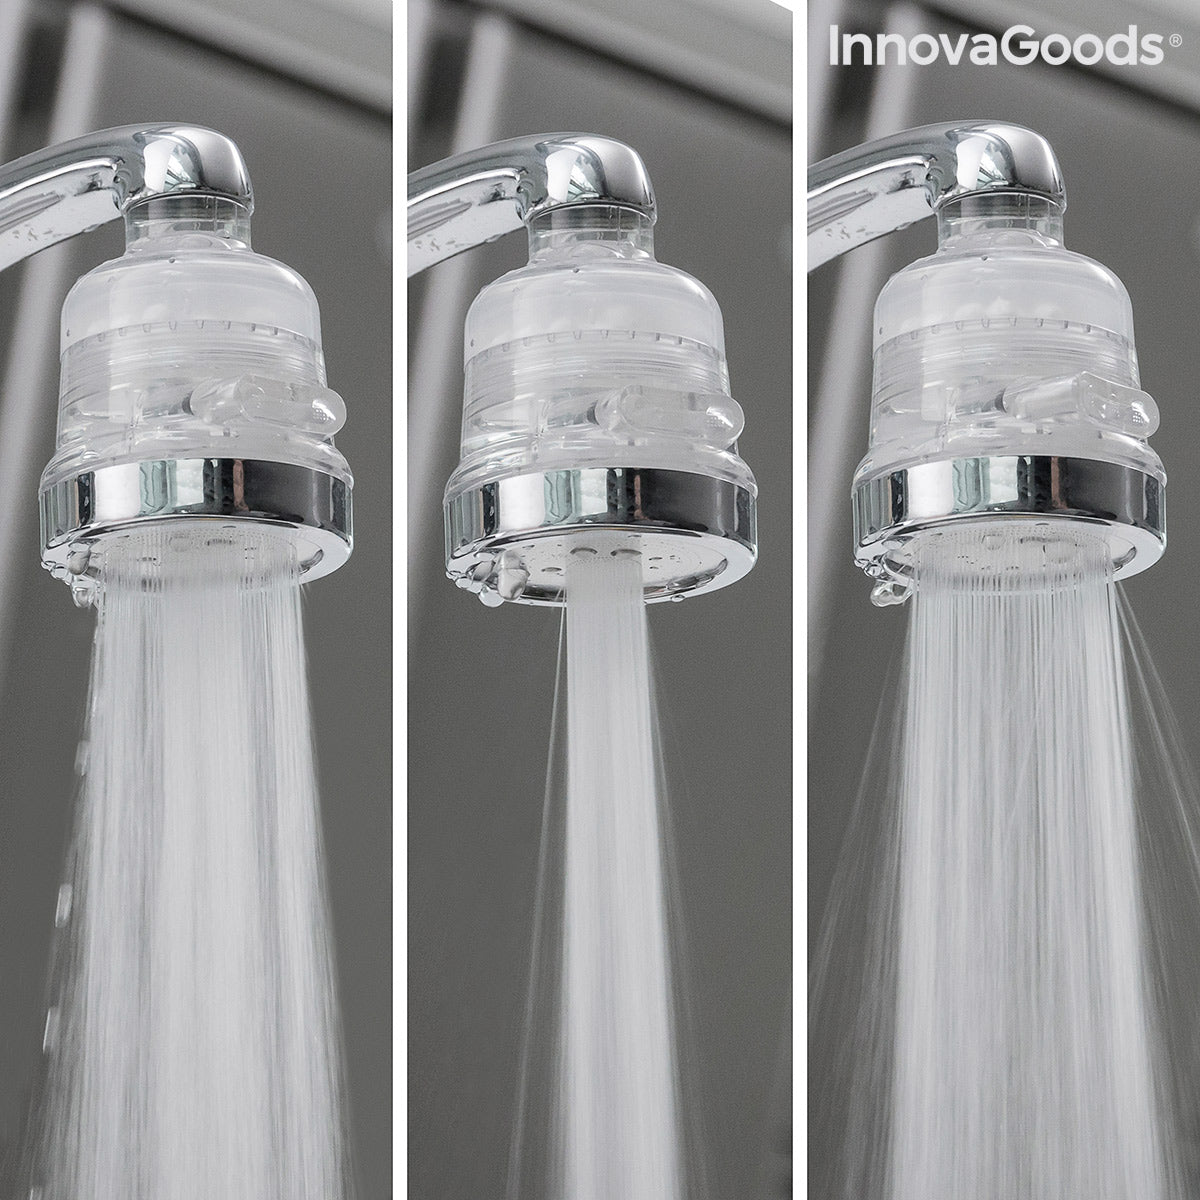 Filtre de robinet pour économie d'eau, 3 Modes – Grandado